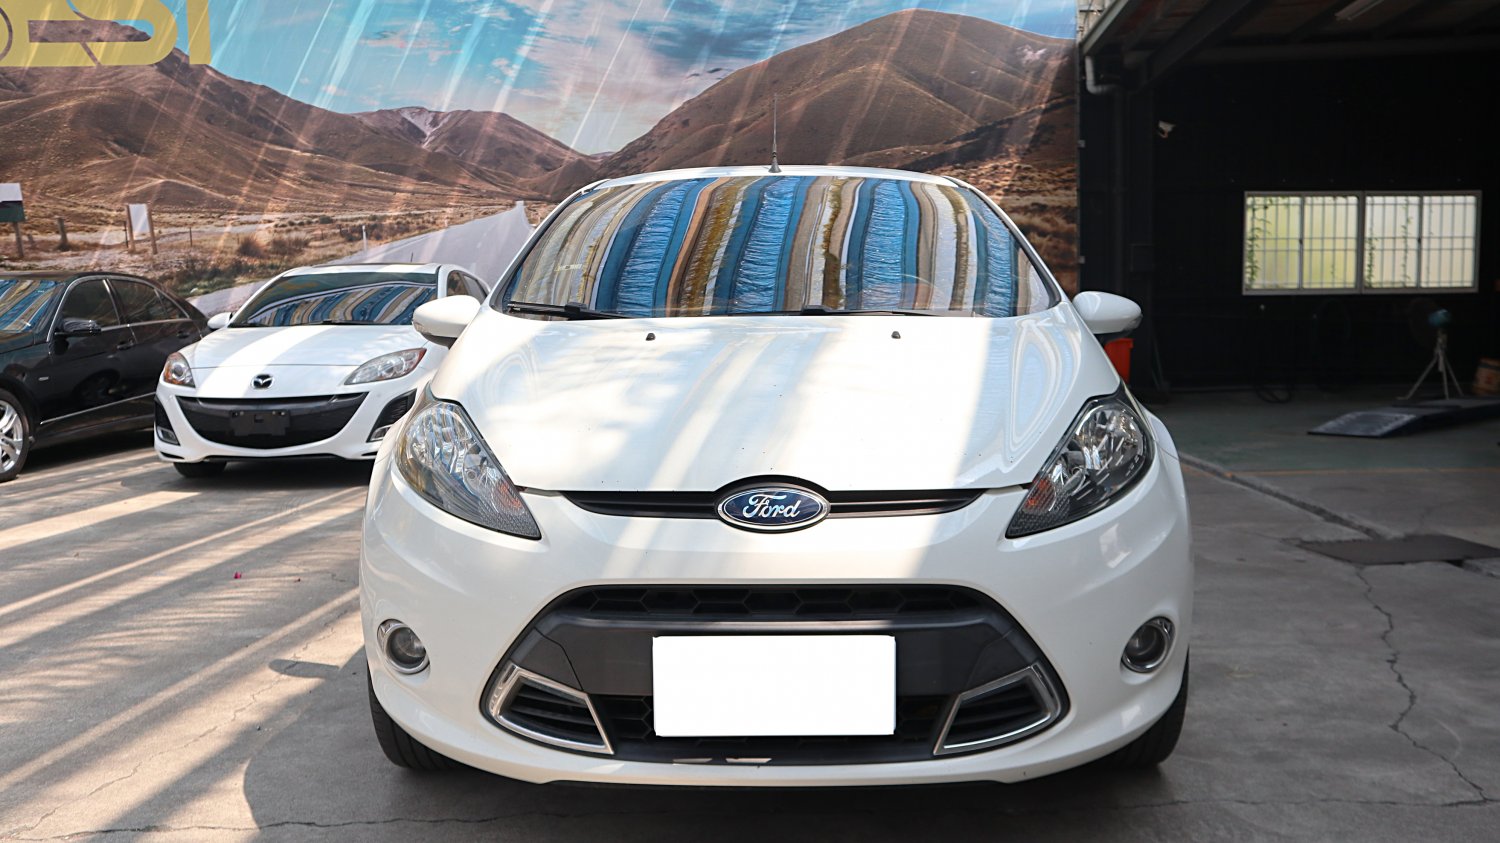 Ford 福特 ／ Fiesta ／ 2012年 ／ 2012年Ford Fiesta 白色 福特中古車 ／ 九州欣旺汽車 (台南)